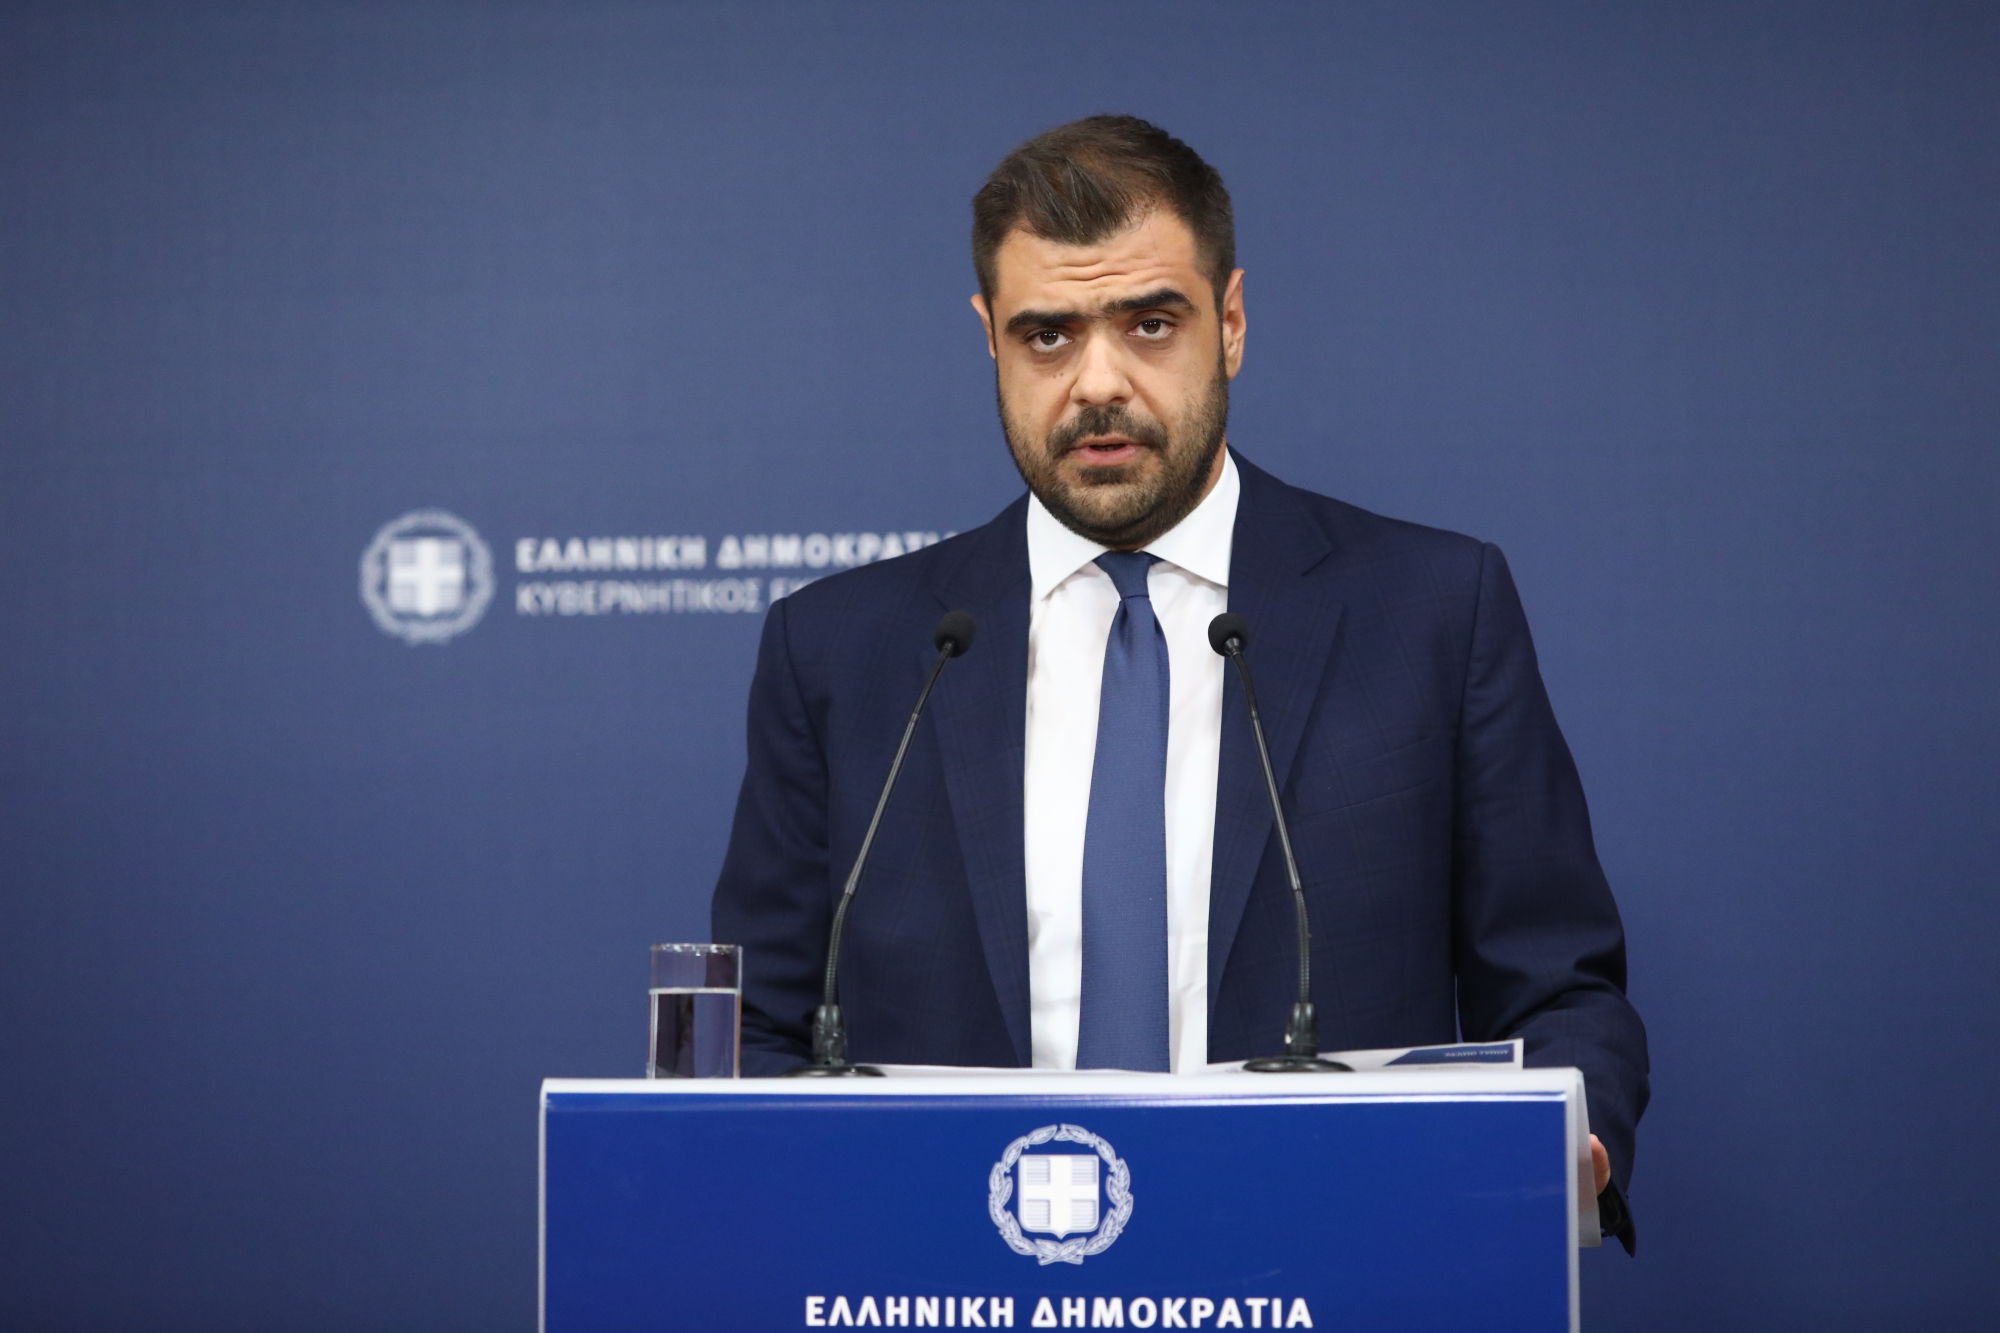 Παύλος Μαρινάκης: «Θα τεθεί σε αργία εάν εκλεγεί o Κασιδιάρης» - δεν τίθεται ζήτημα ρύθμισης για να μην κατέβει